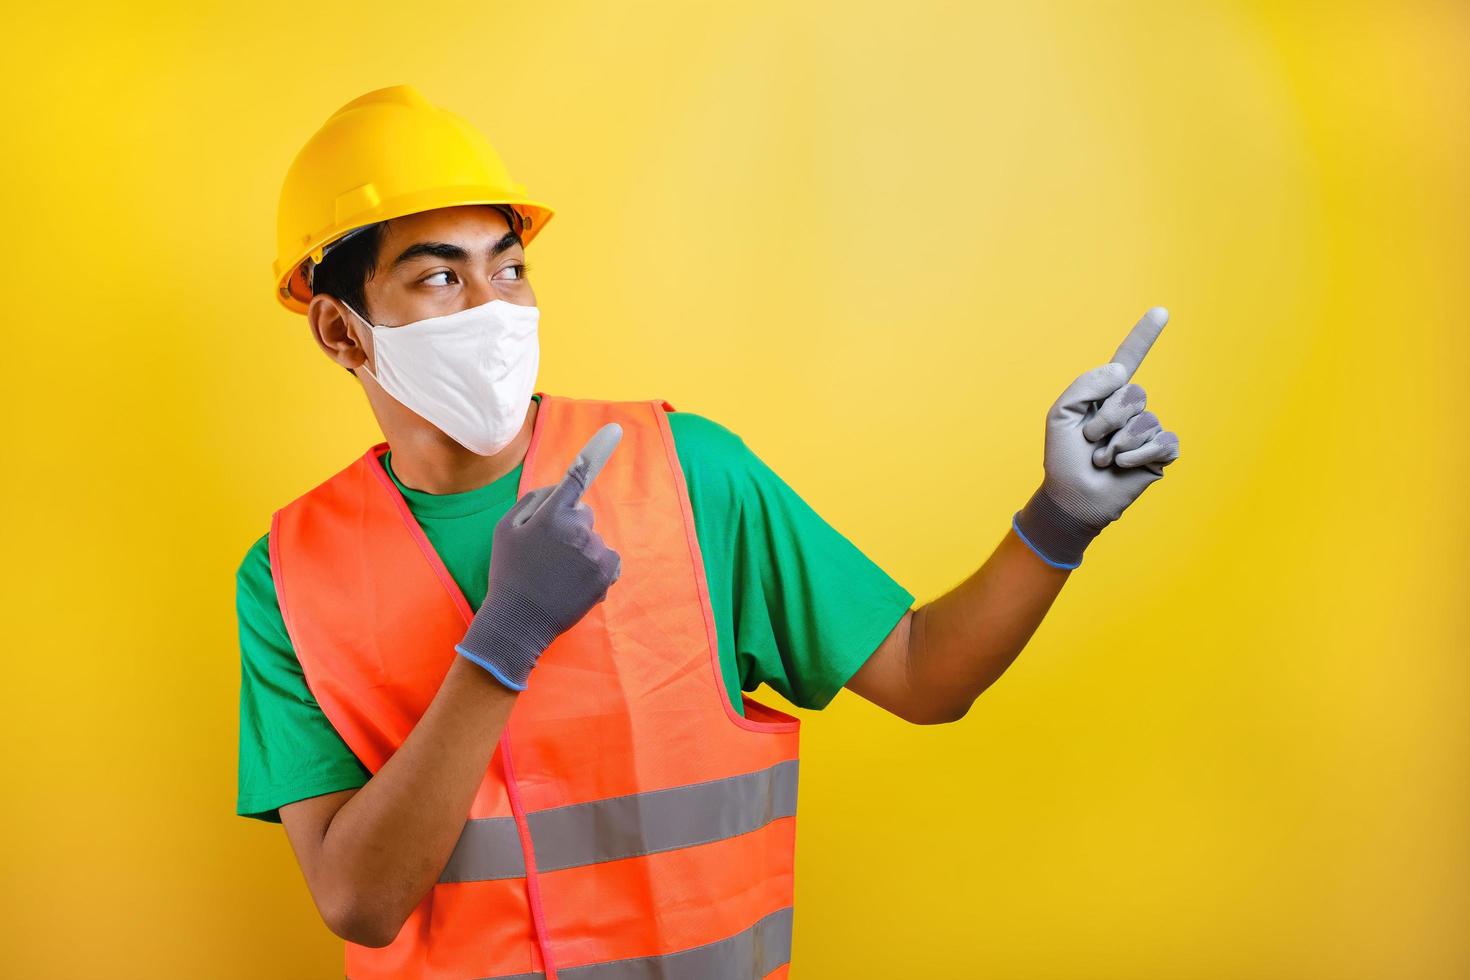 trabajador de la construcción asiático con máscara protectora que señala algo en su costado foto